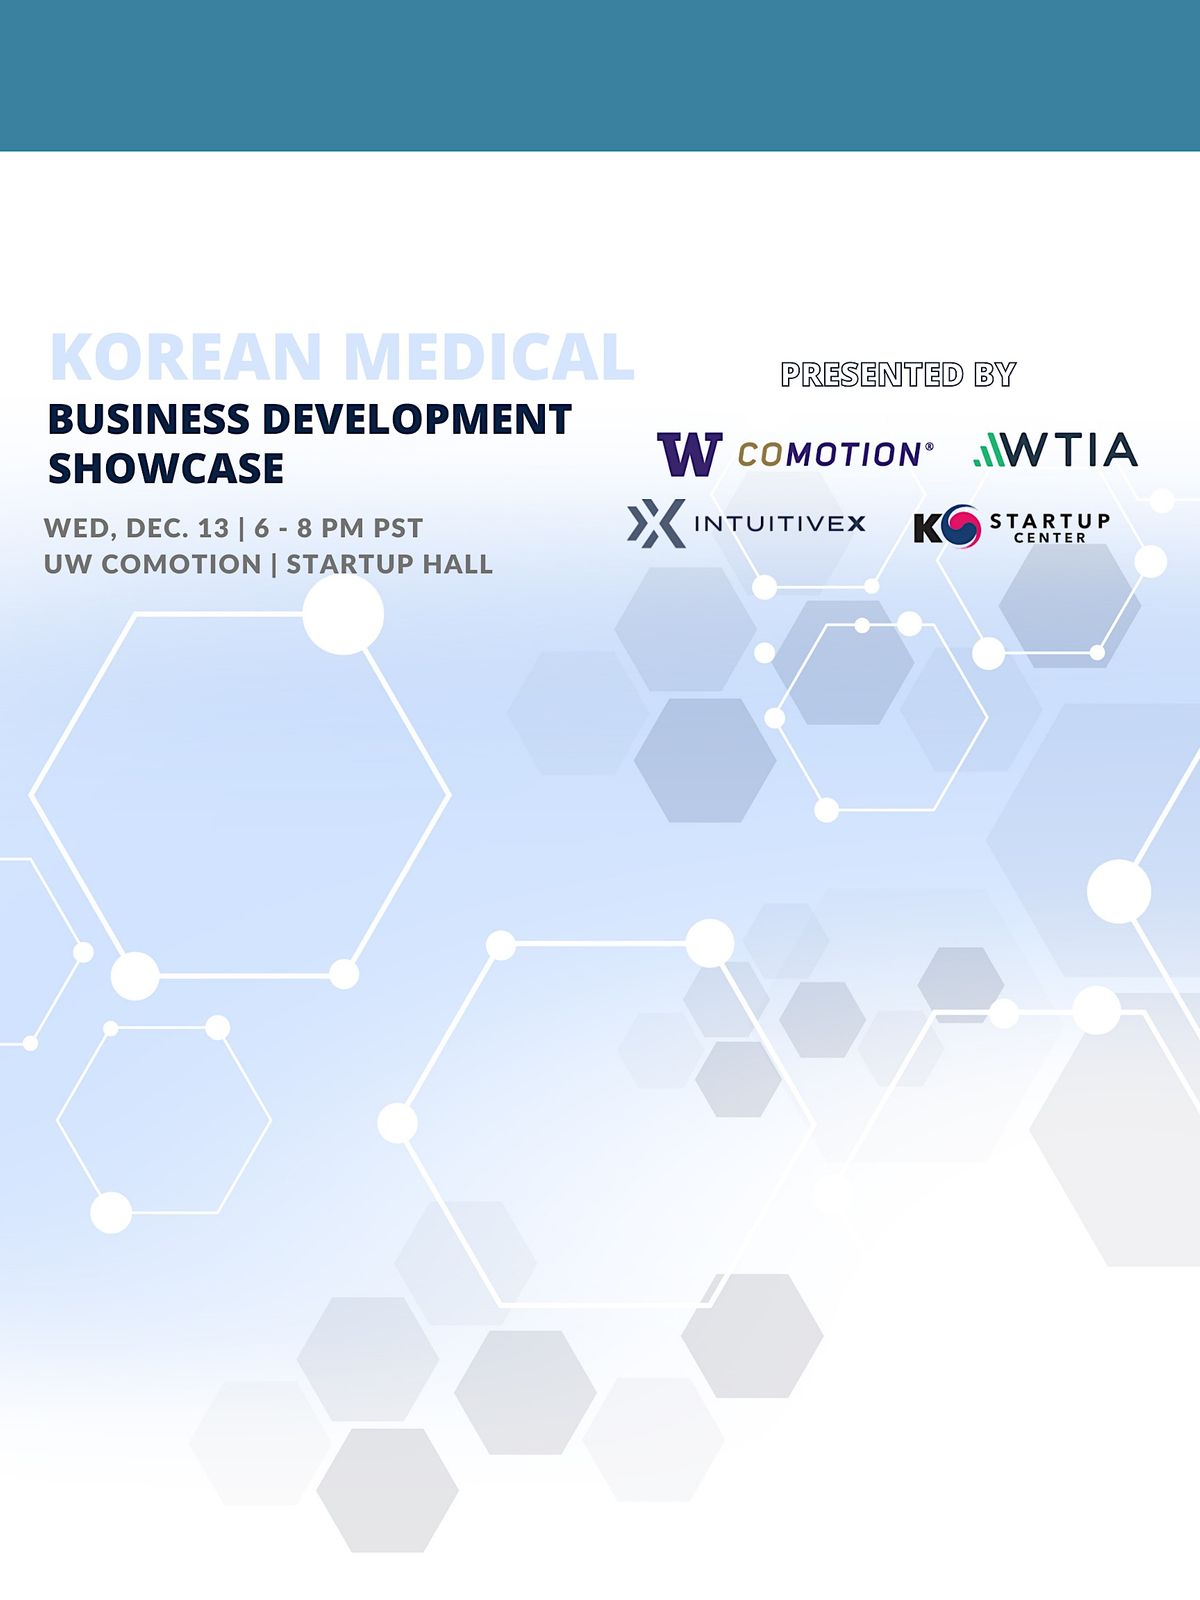 Korean Medical Innovation Business Development Showcase